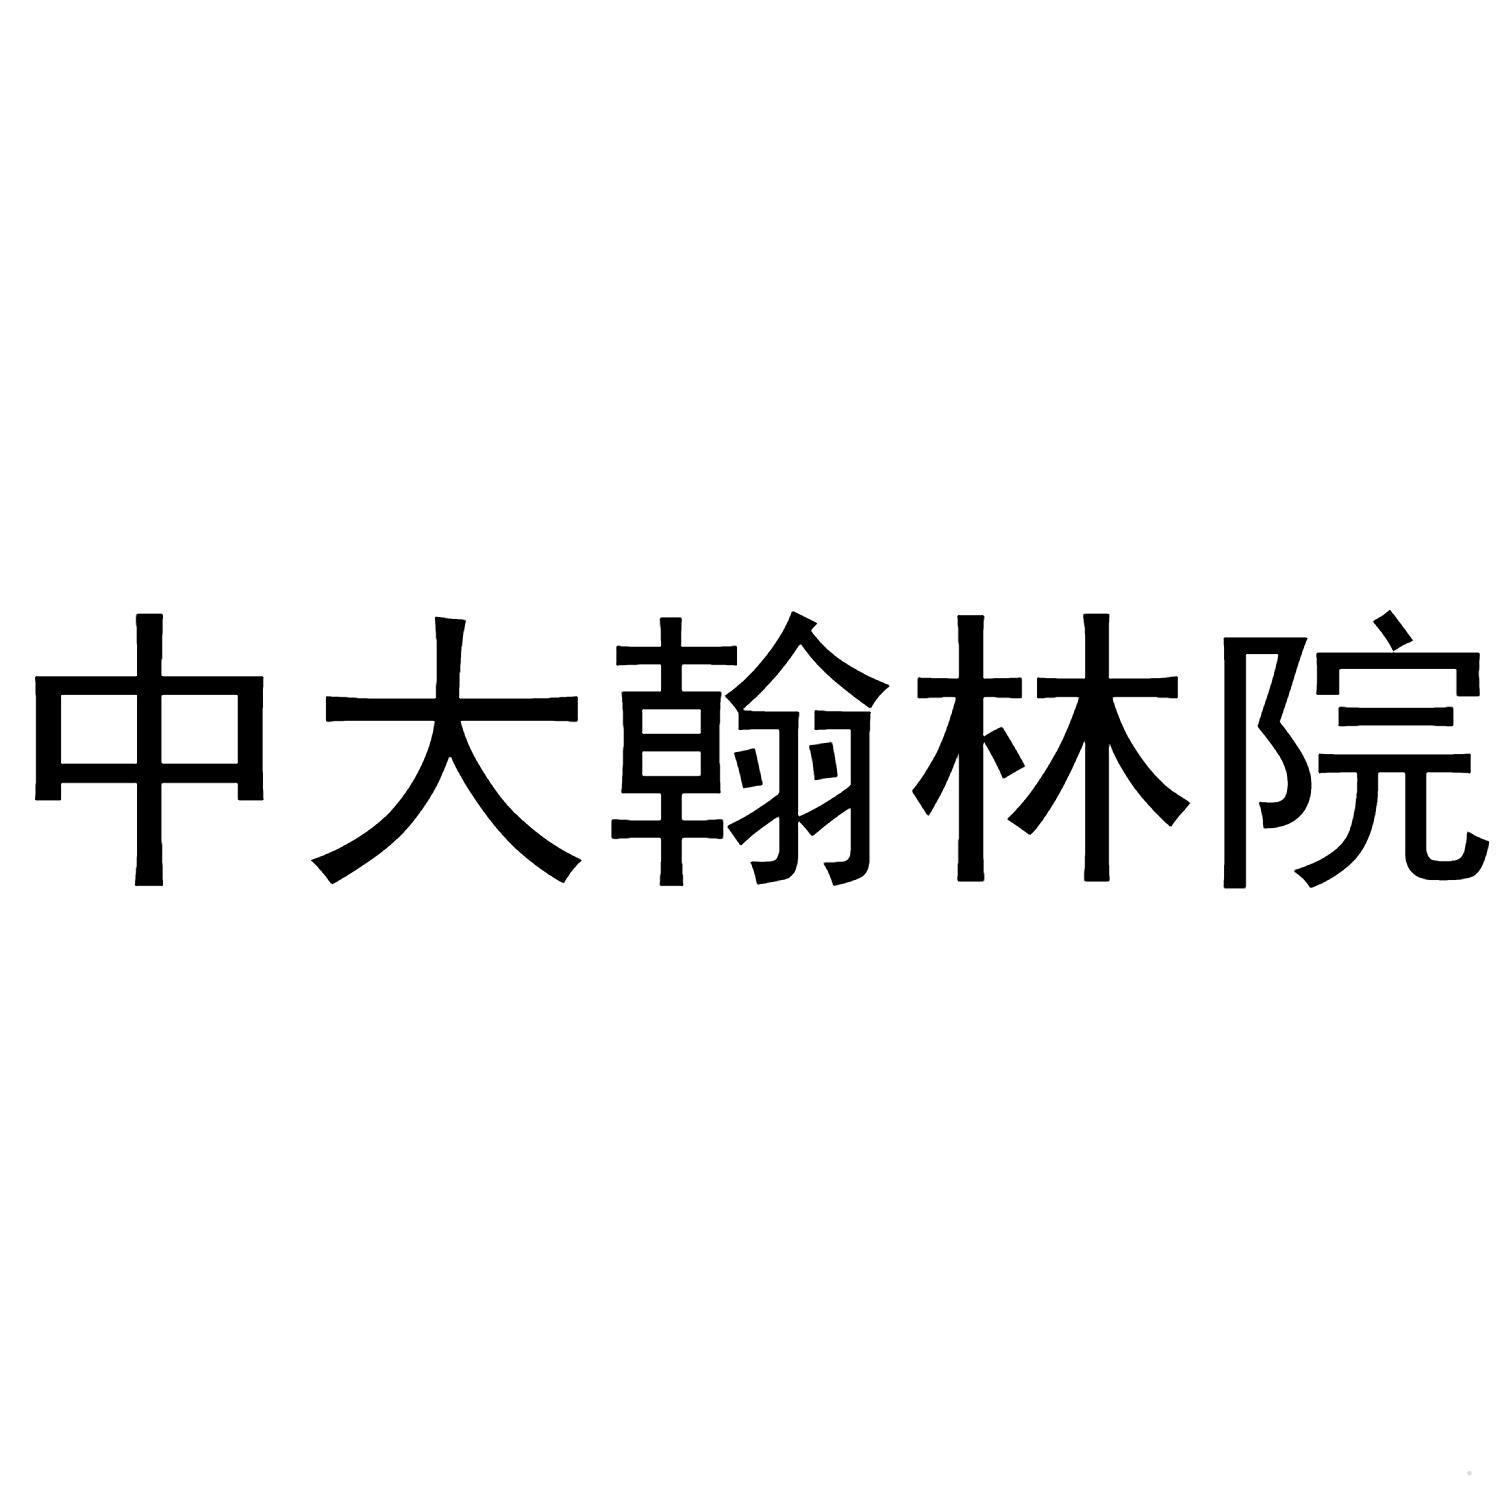 中大翰林院logo